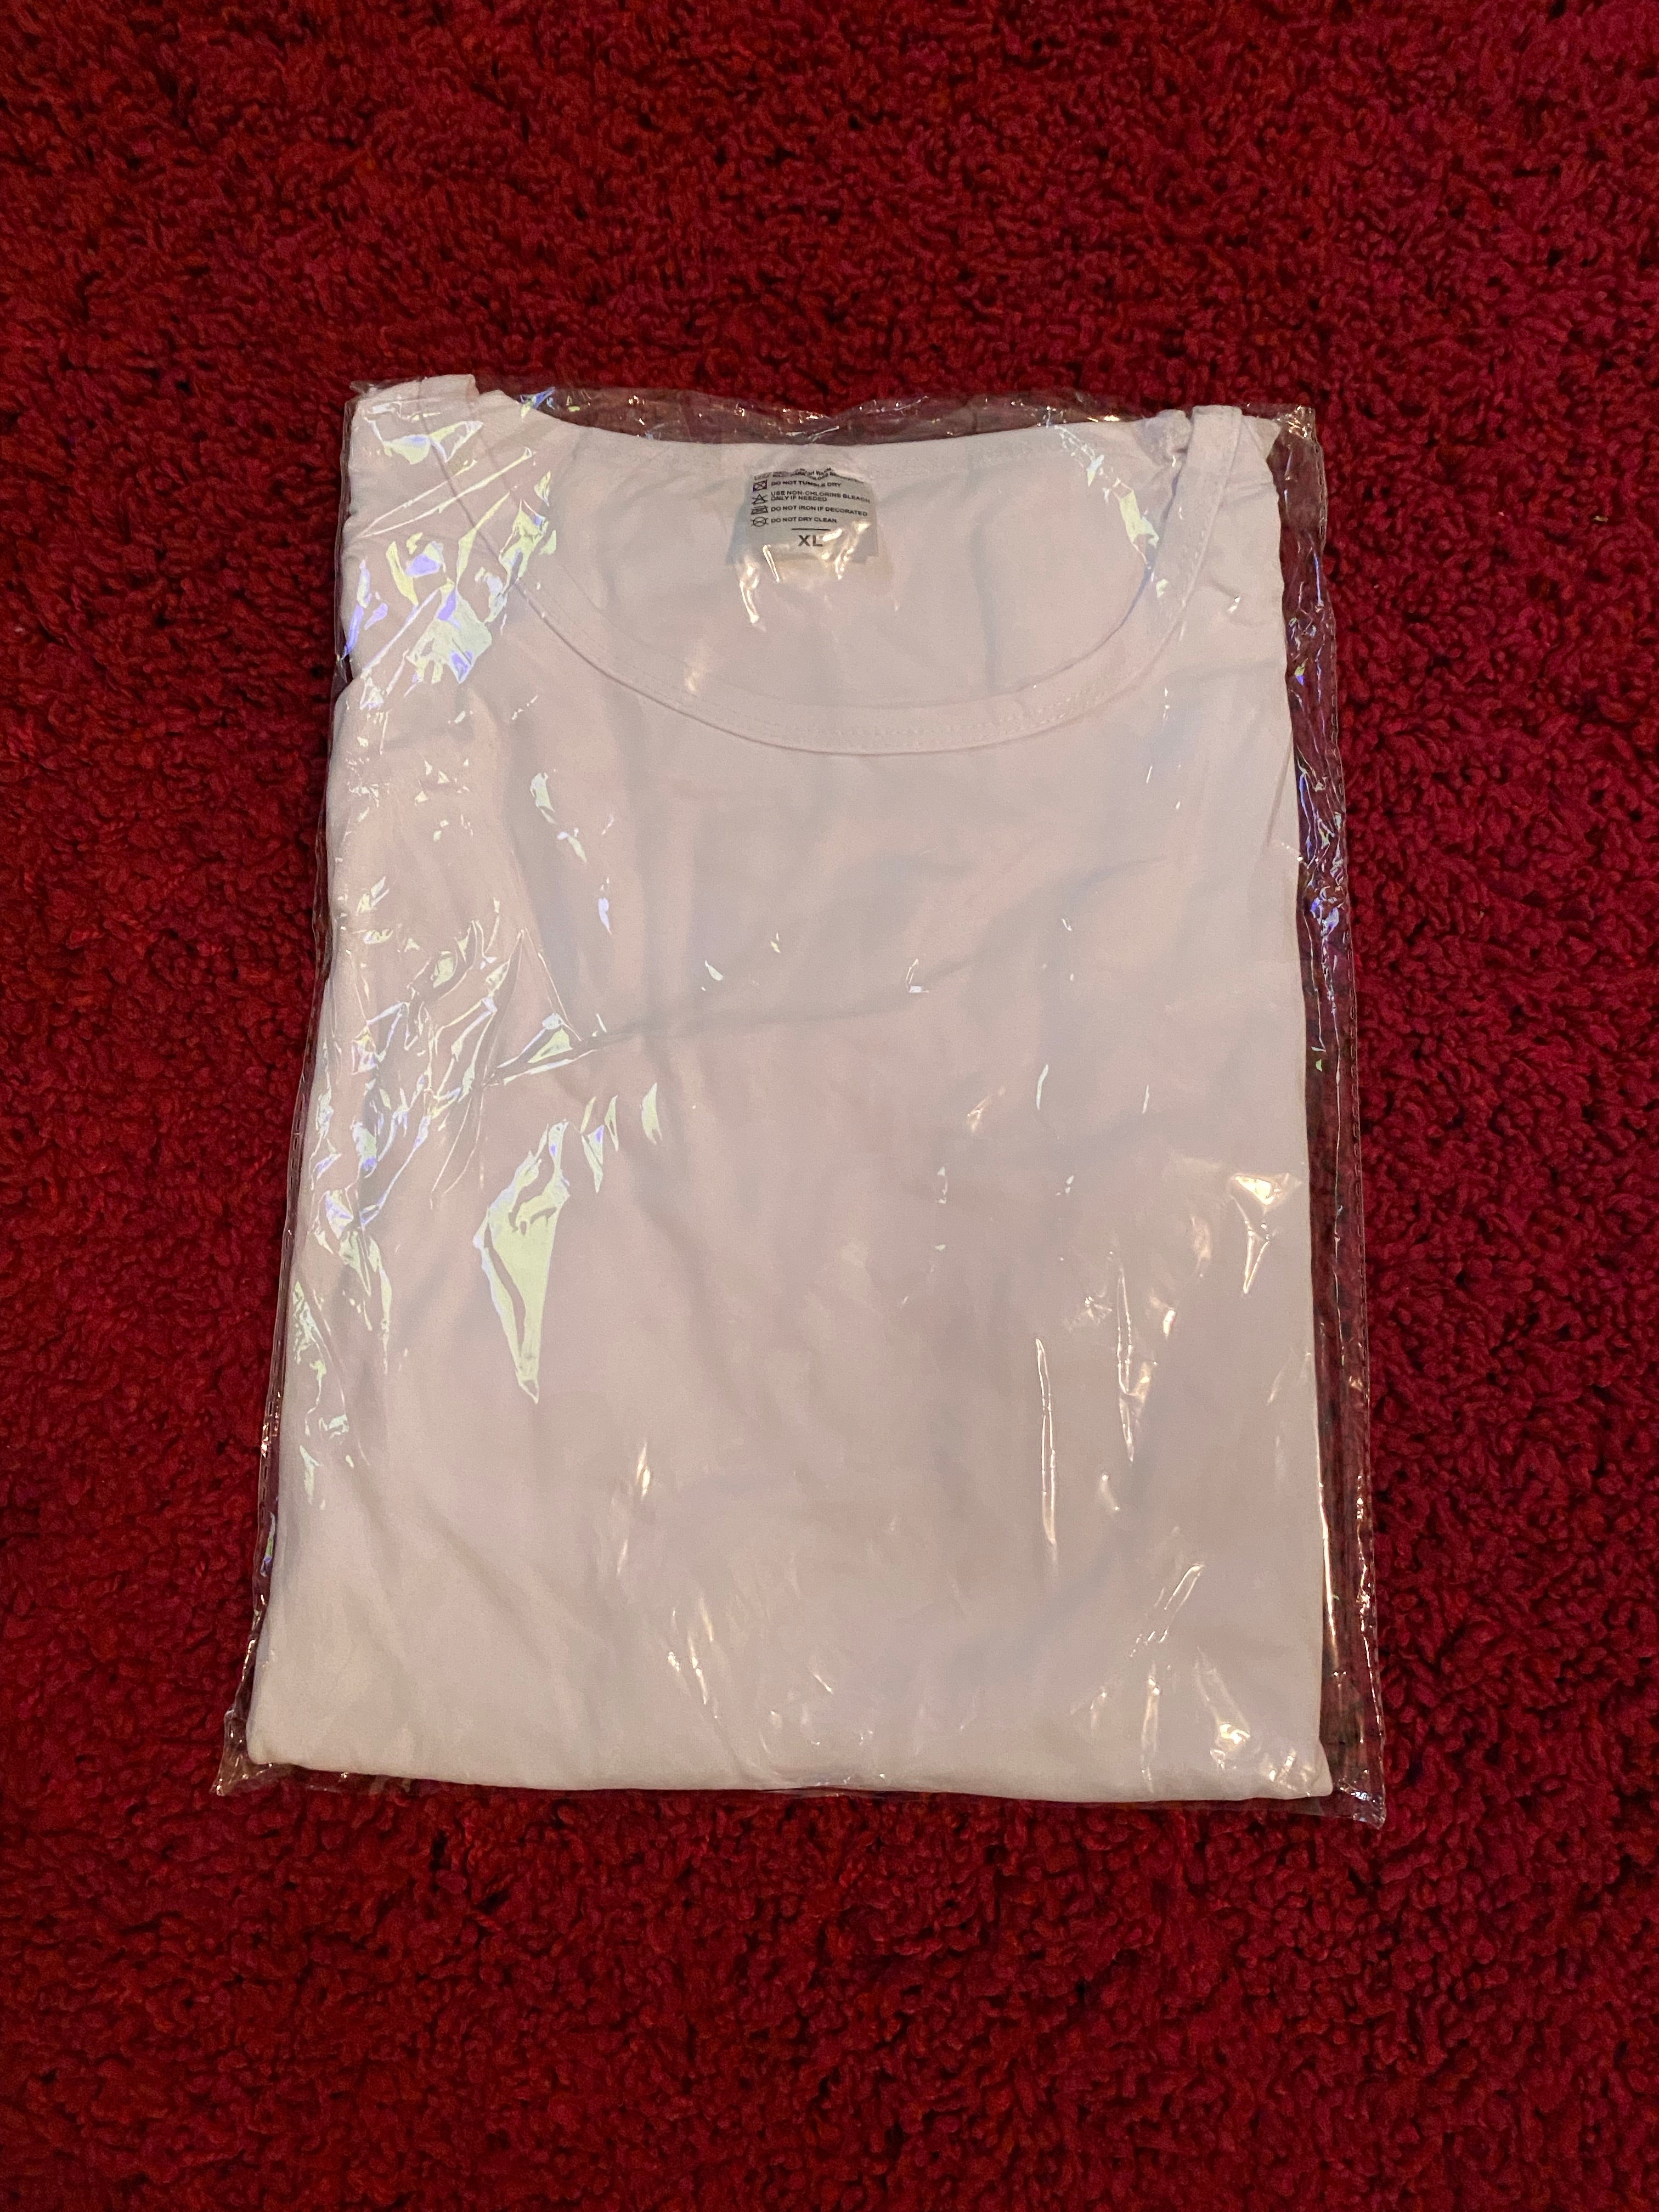 Short Sleeve Sublimation Unisex 7 oz T-Shirt | Point Blanks LLC